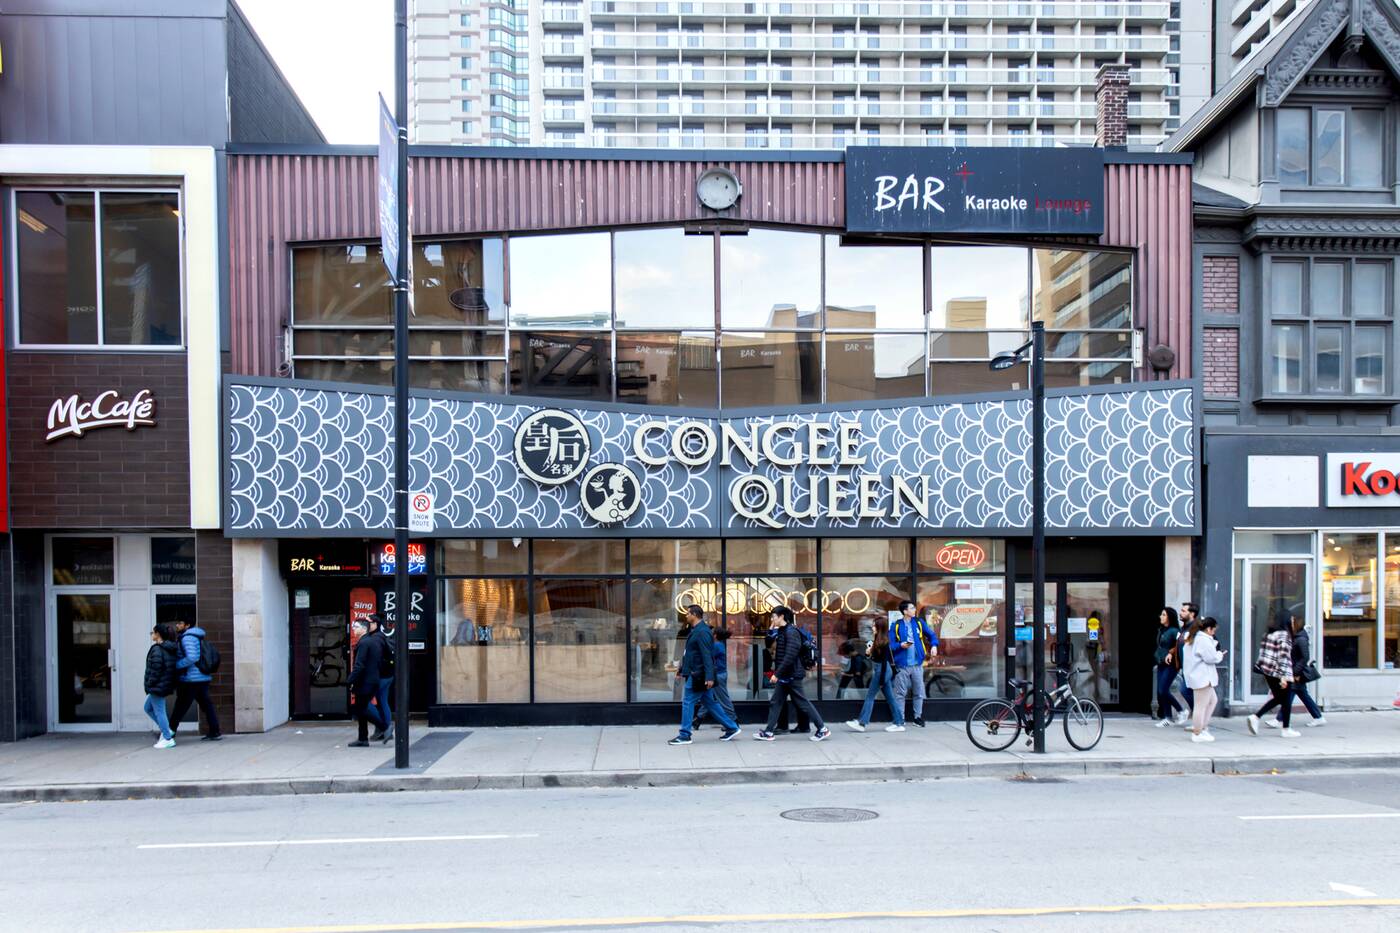 congee queen downtown